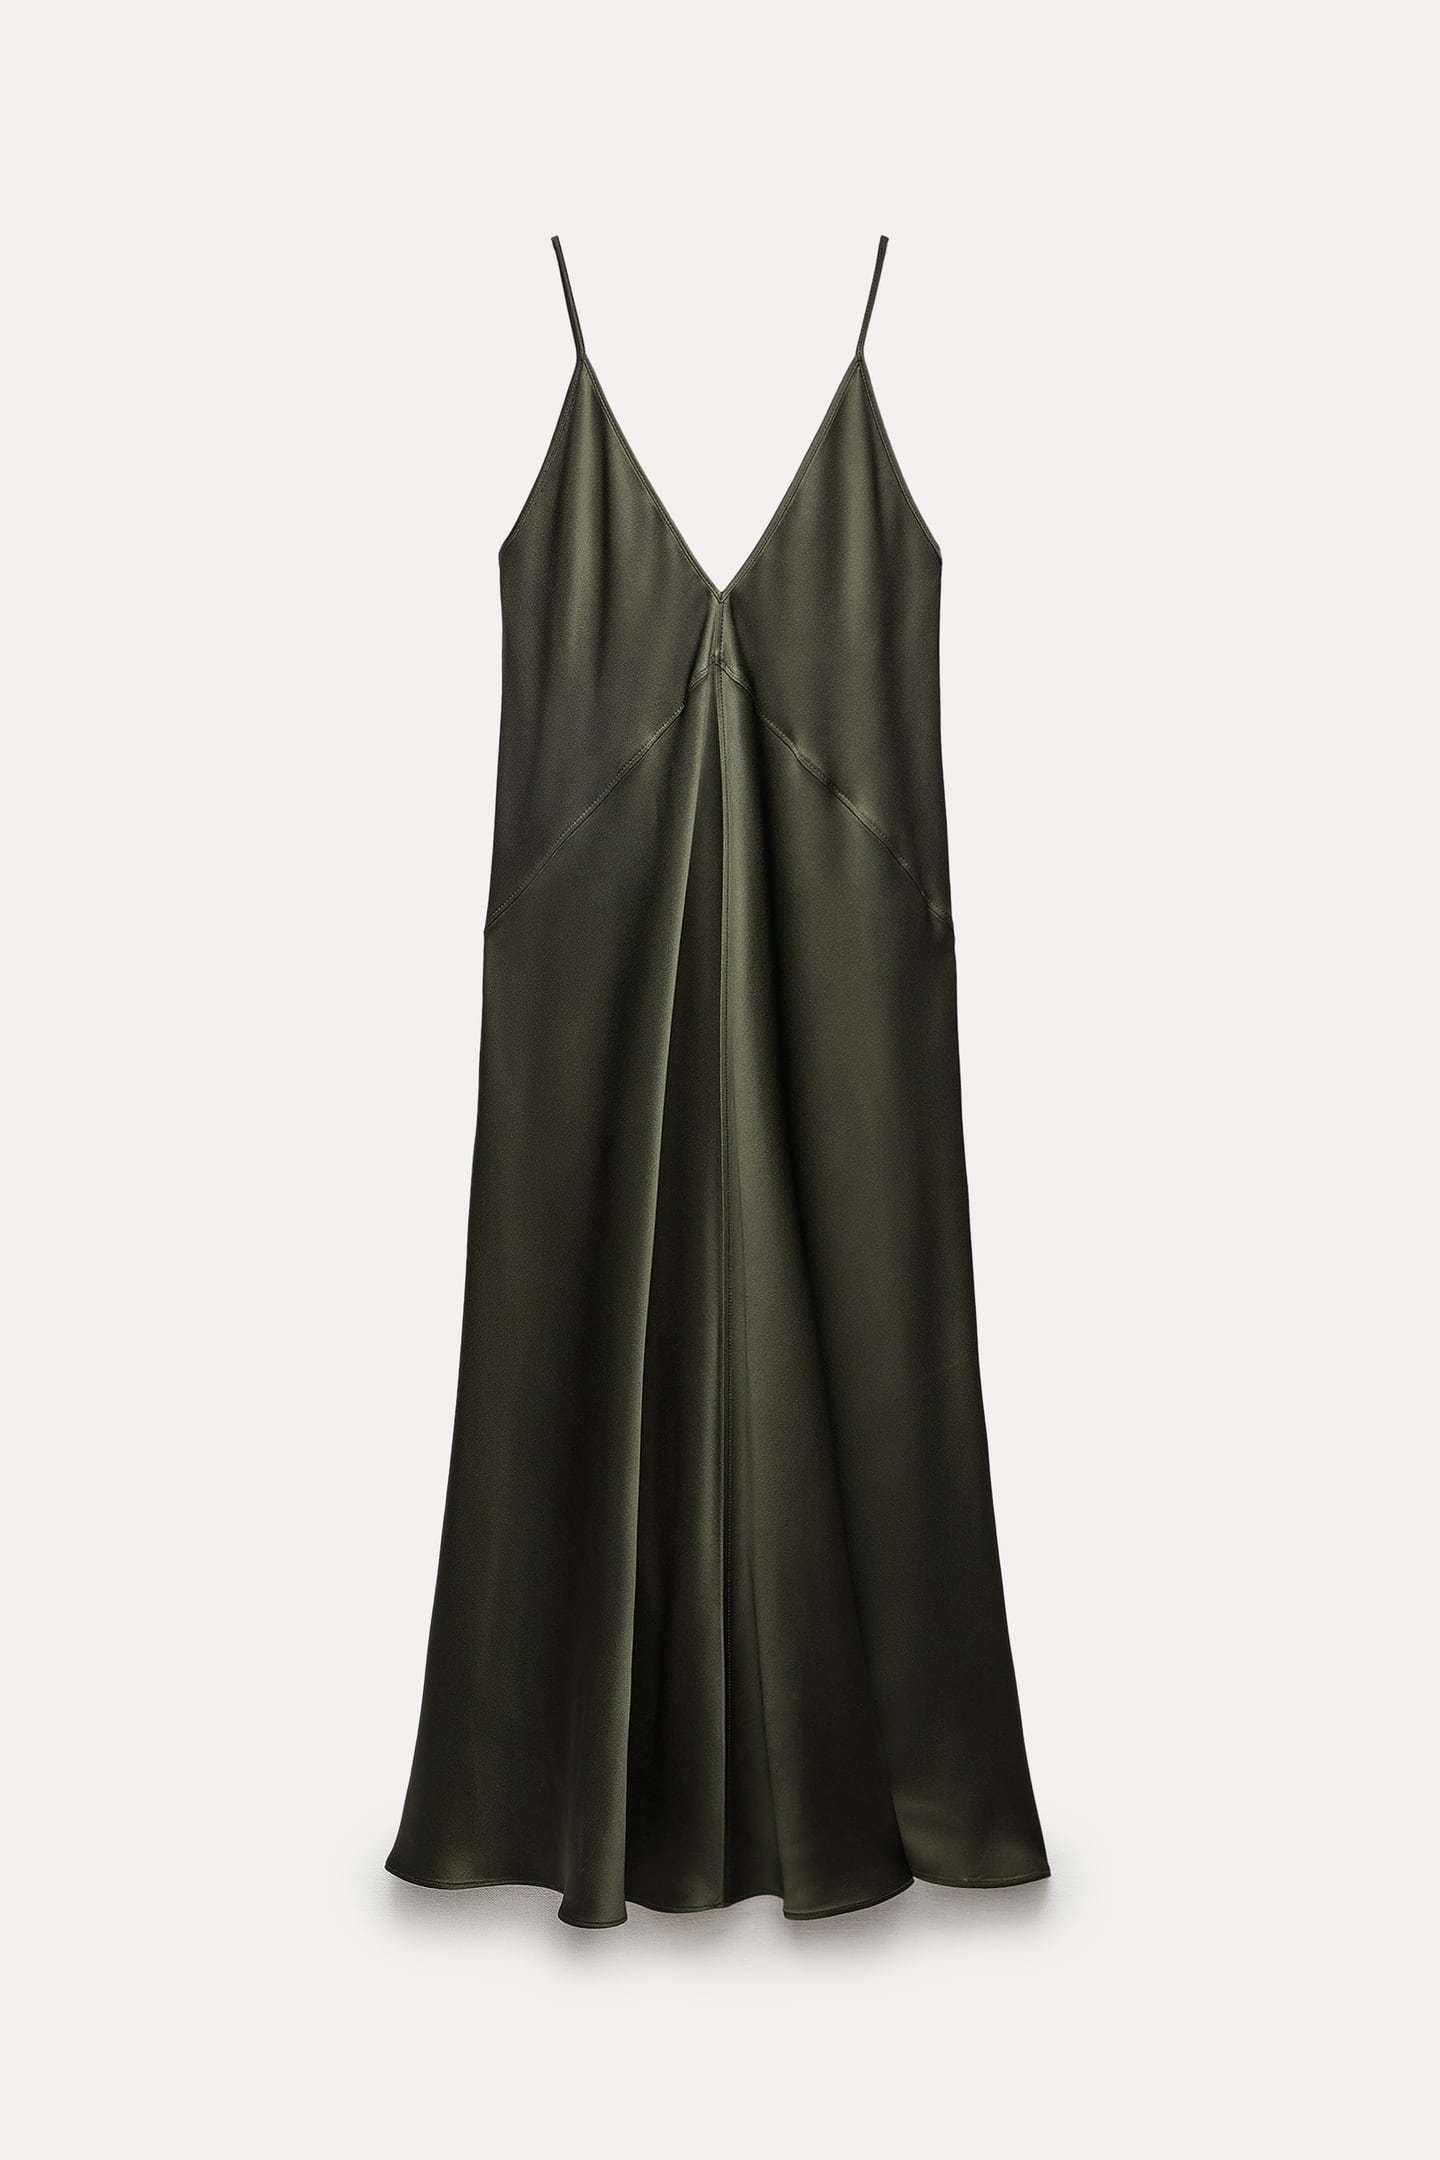 Estos son los vestidos de Zara de nueva temporada: midi lencero